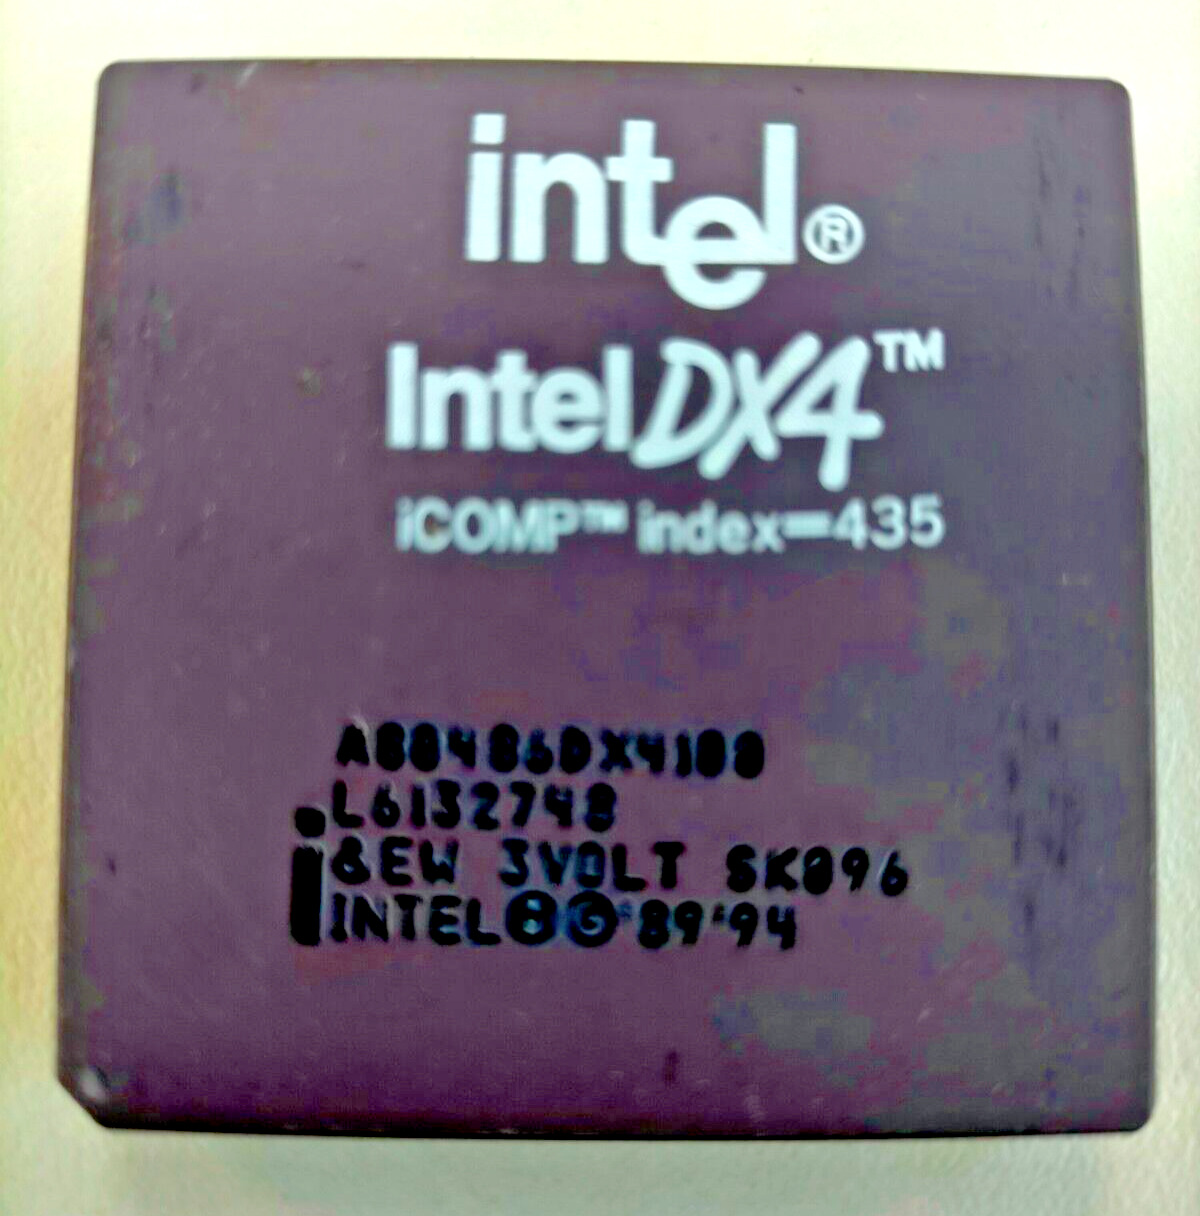 Intel 486 DX4 75MHZ A80486DX4100 Processor Vintage Rare 3Volt